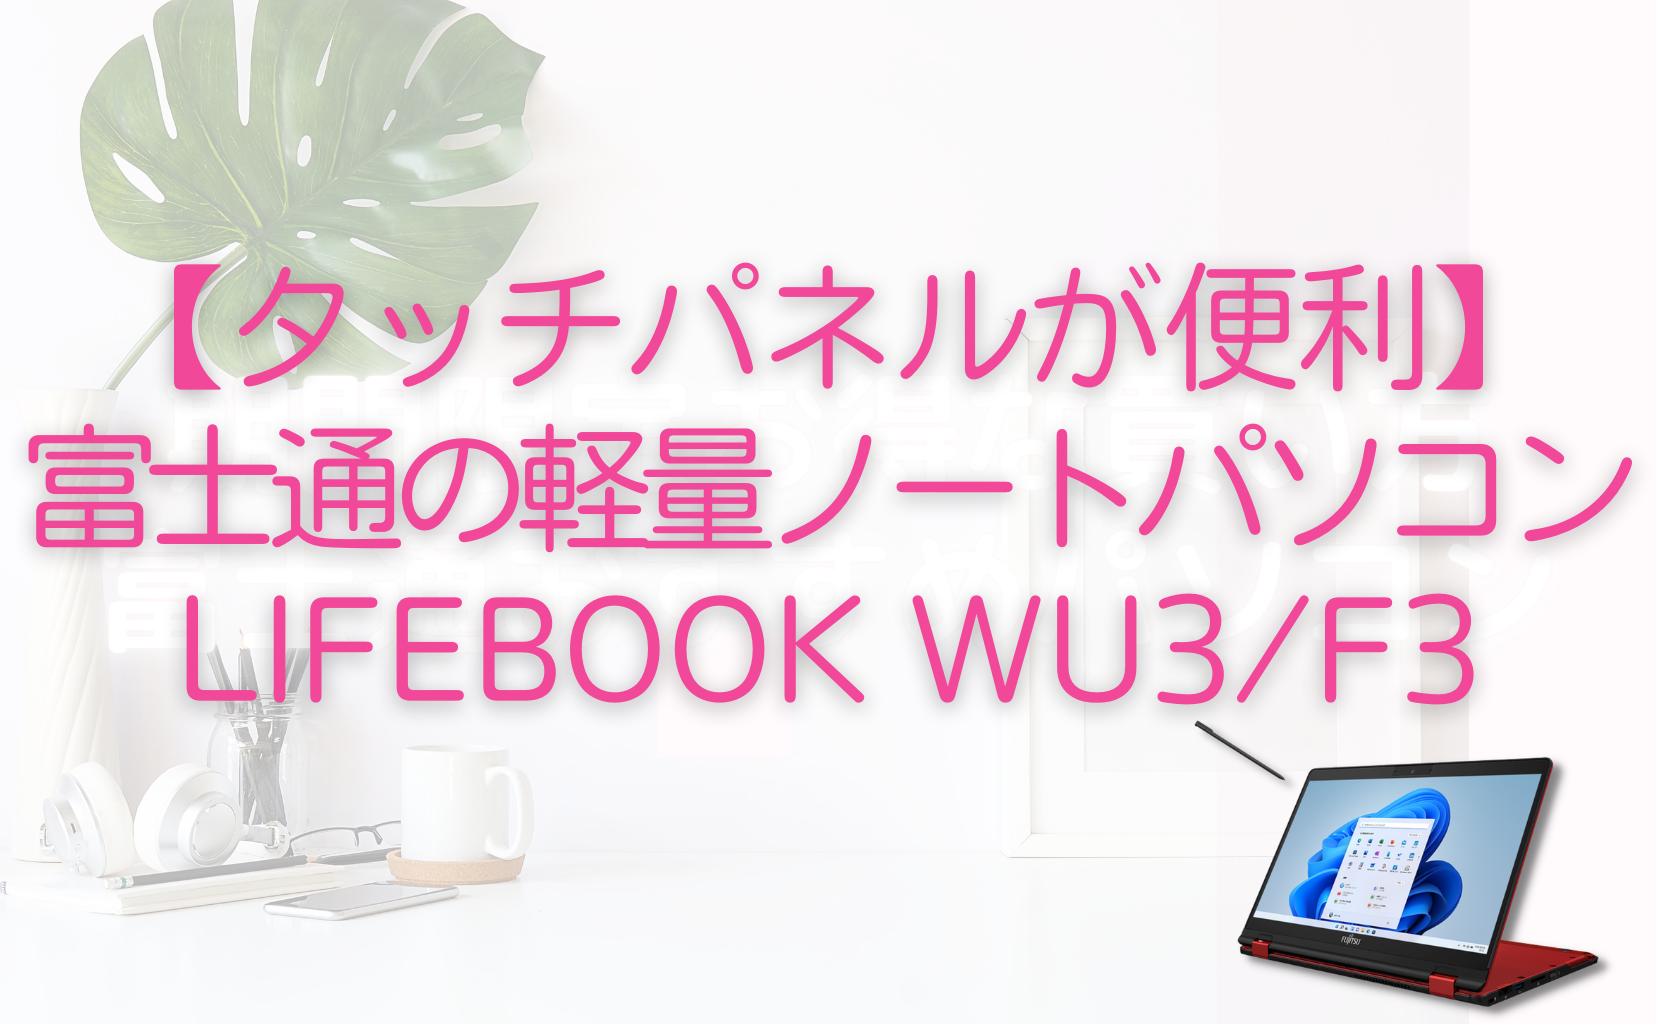 【便利なタッチパネルのノートパソコン】富士通のLIFEBOOK WU3/F3のメリットを解説